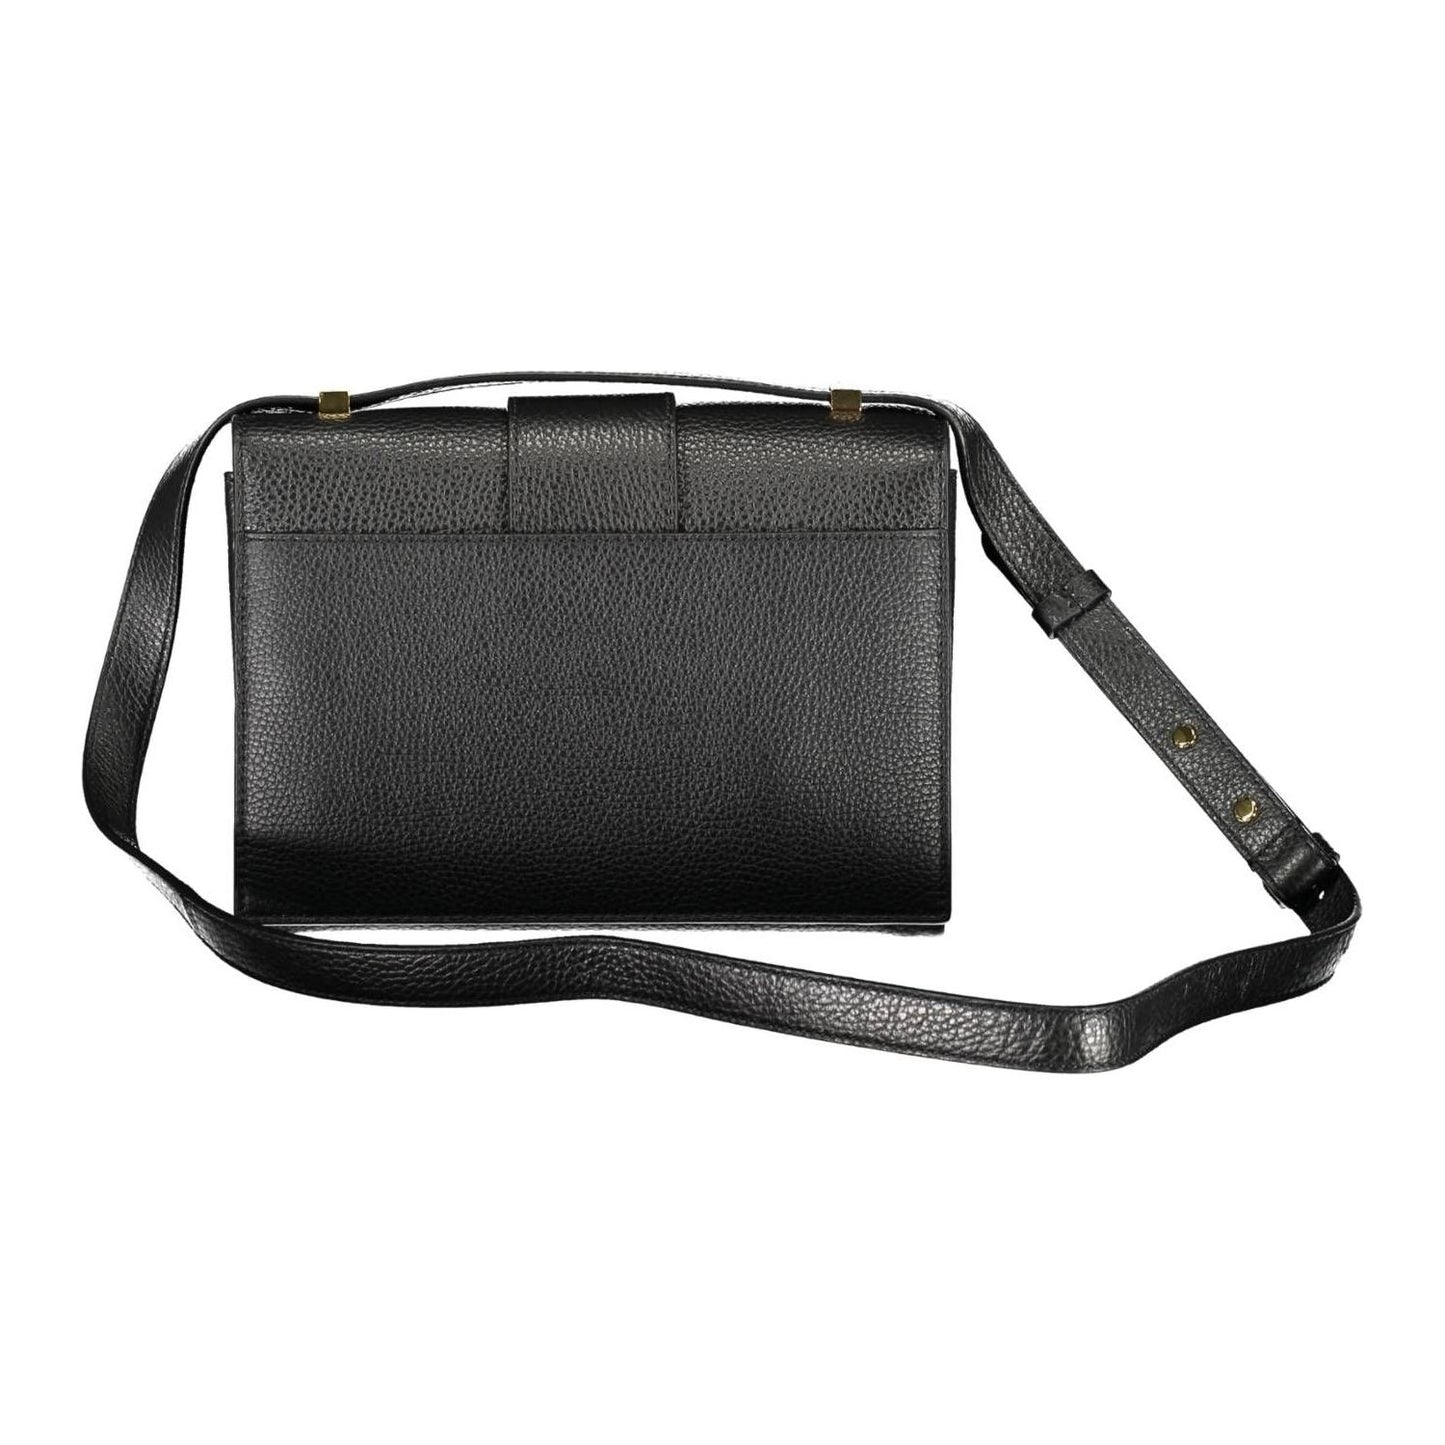 Coccinelle Chic Black Leather Shoulder Bag chic-black-leather-shoulder-bag